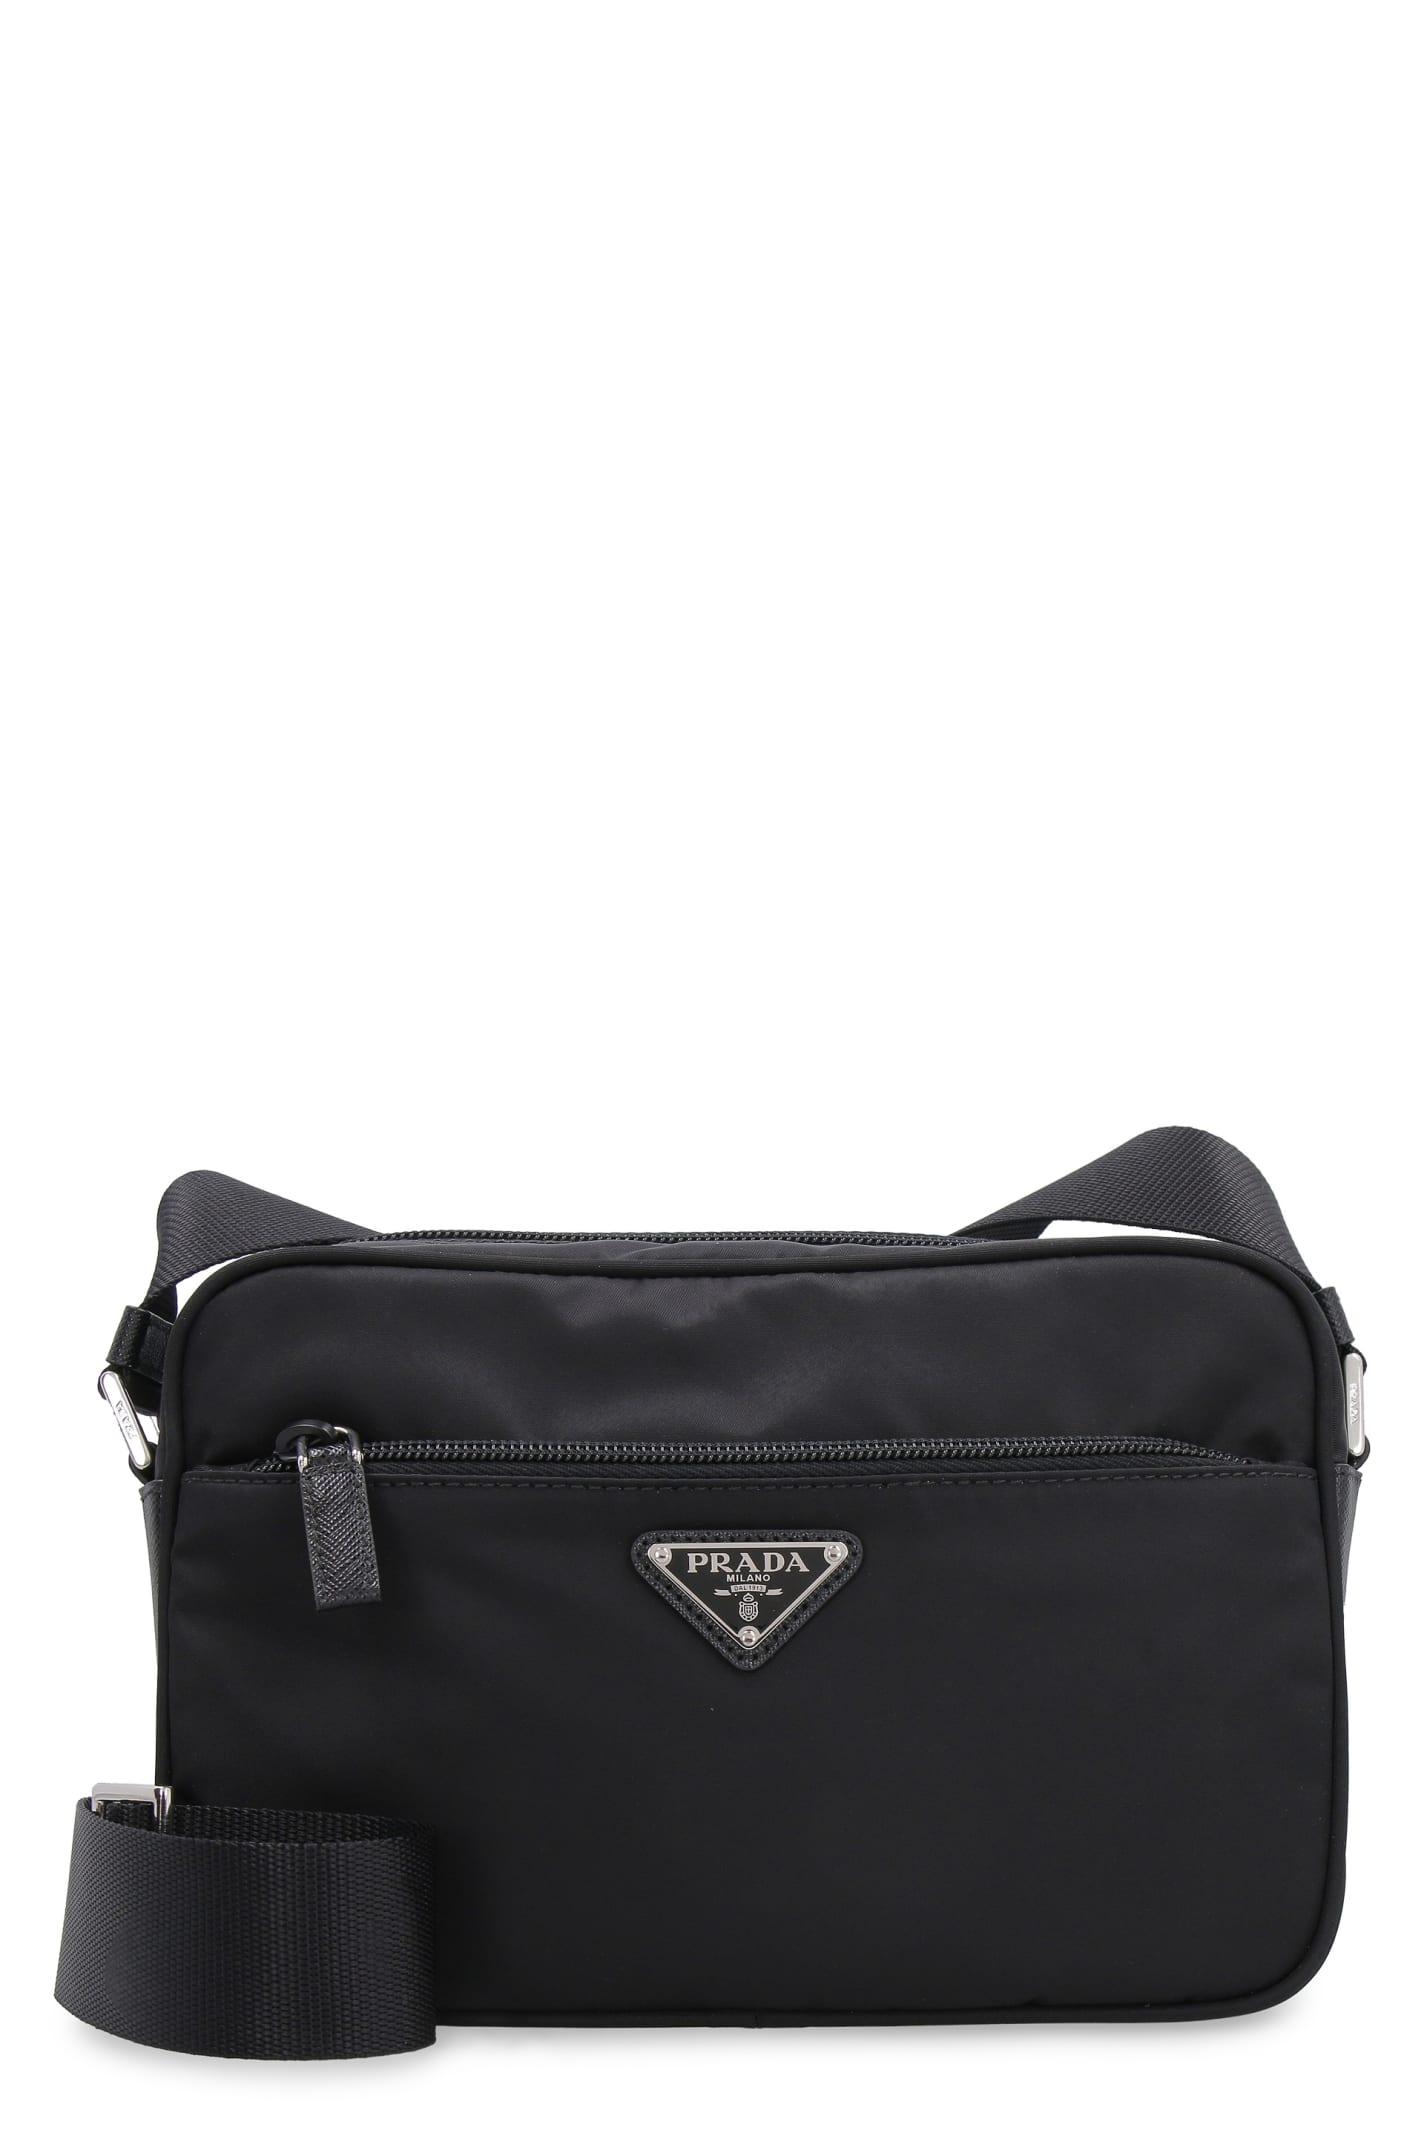 Prada Nylon Messenger Bag in Black | Lyst